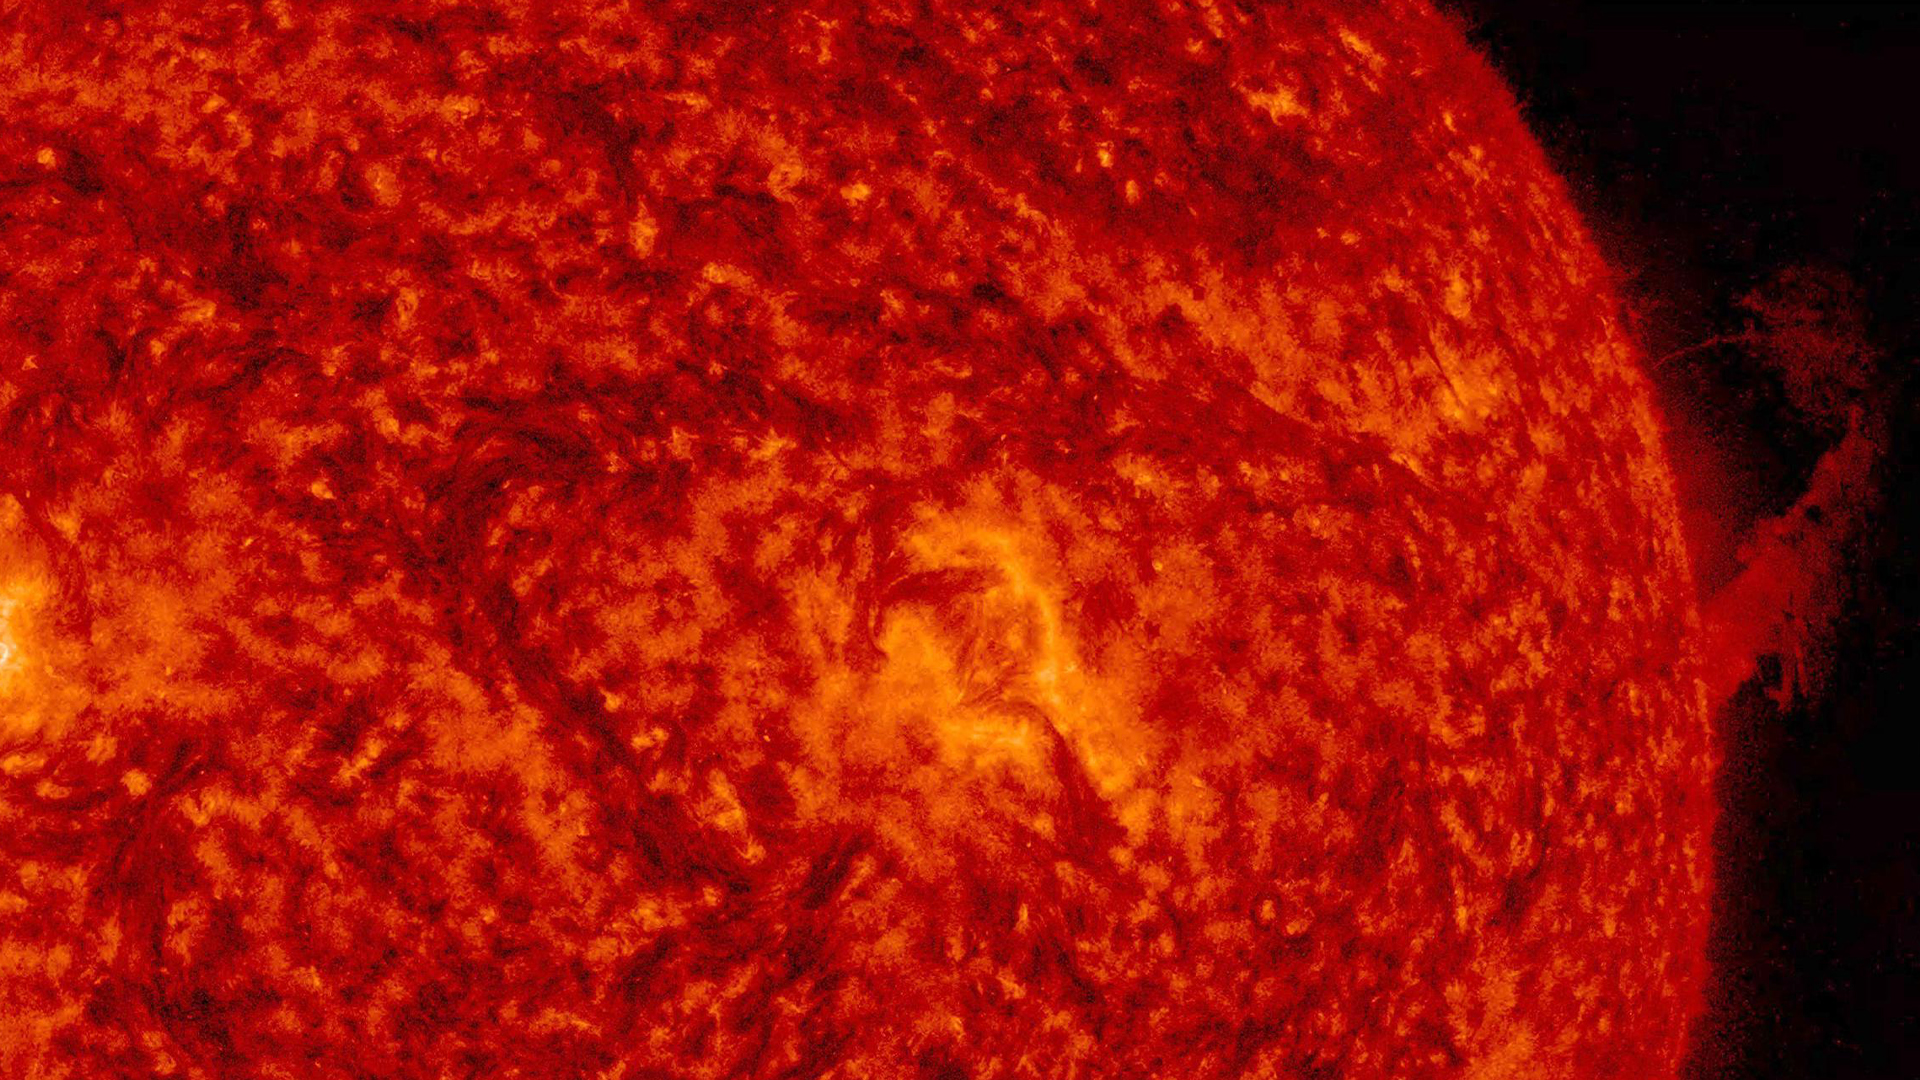 Протуберанец, наблюдаемый вдоль правого края Солнца, поднялся вверх, а затем большая его часть опустилась обратно на поверхность.